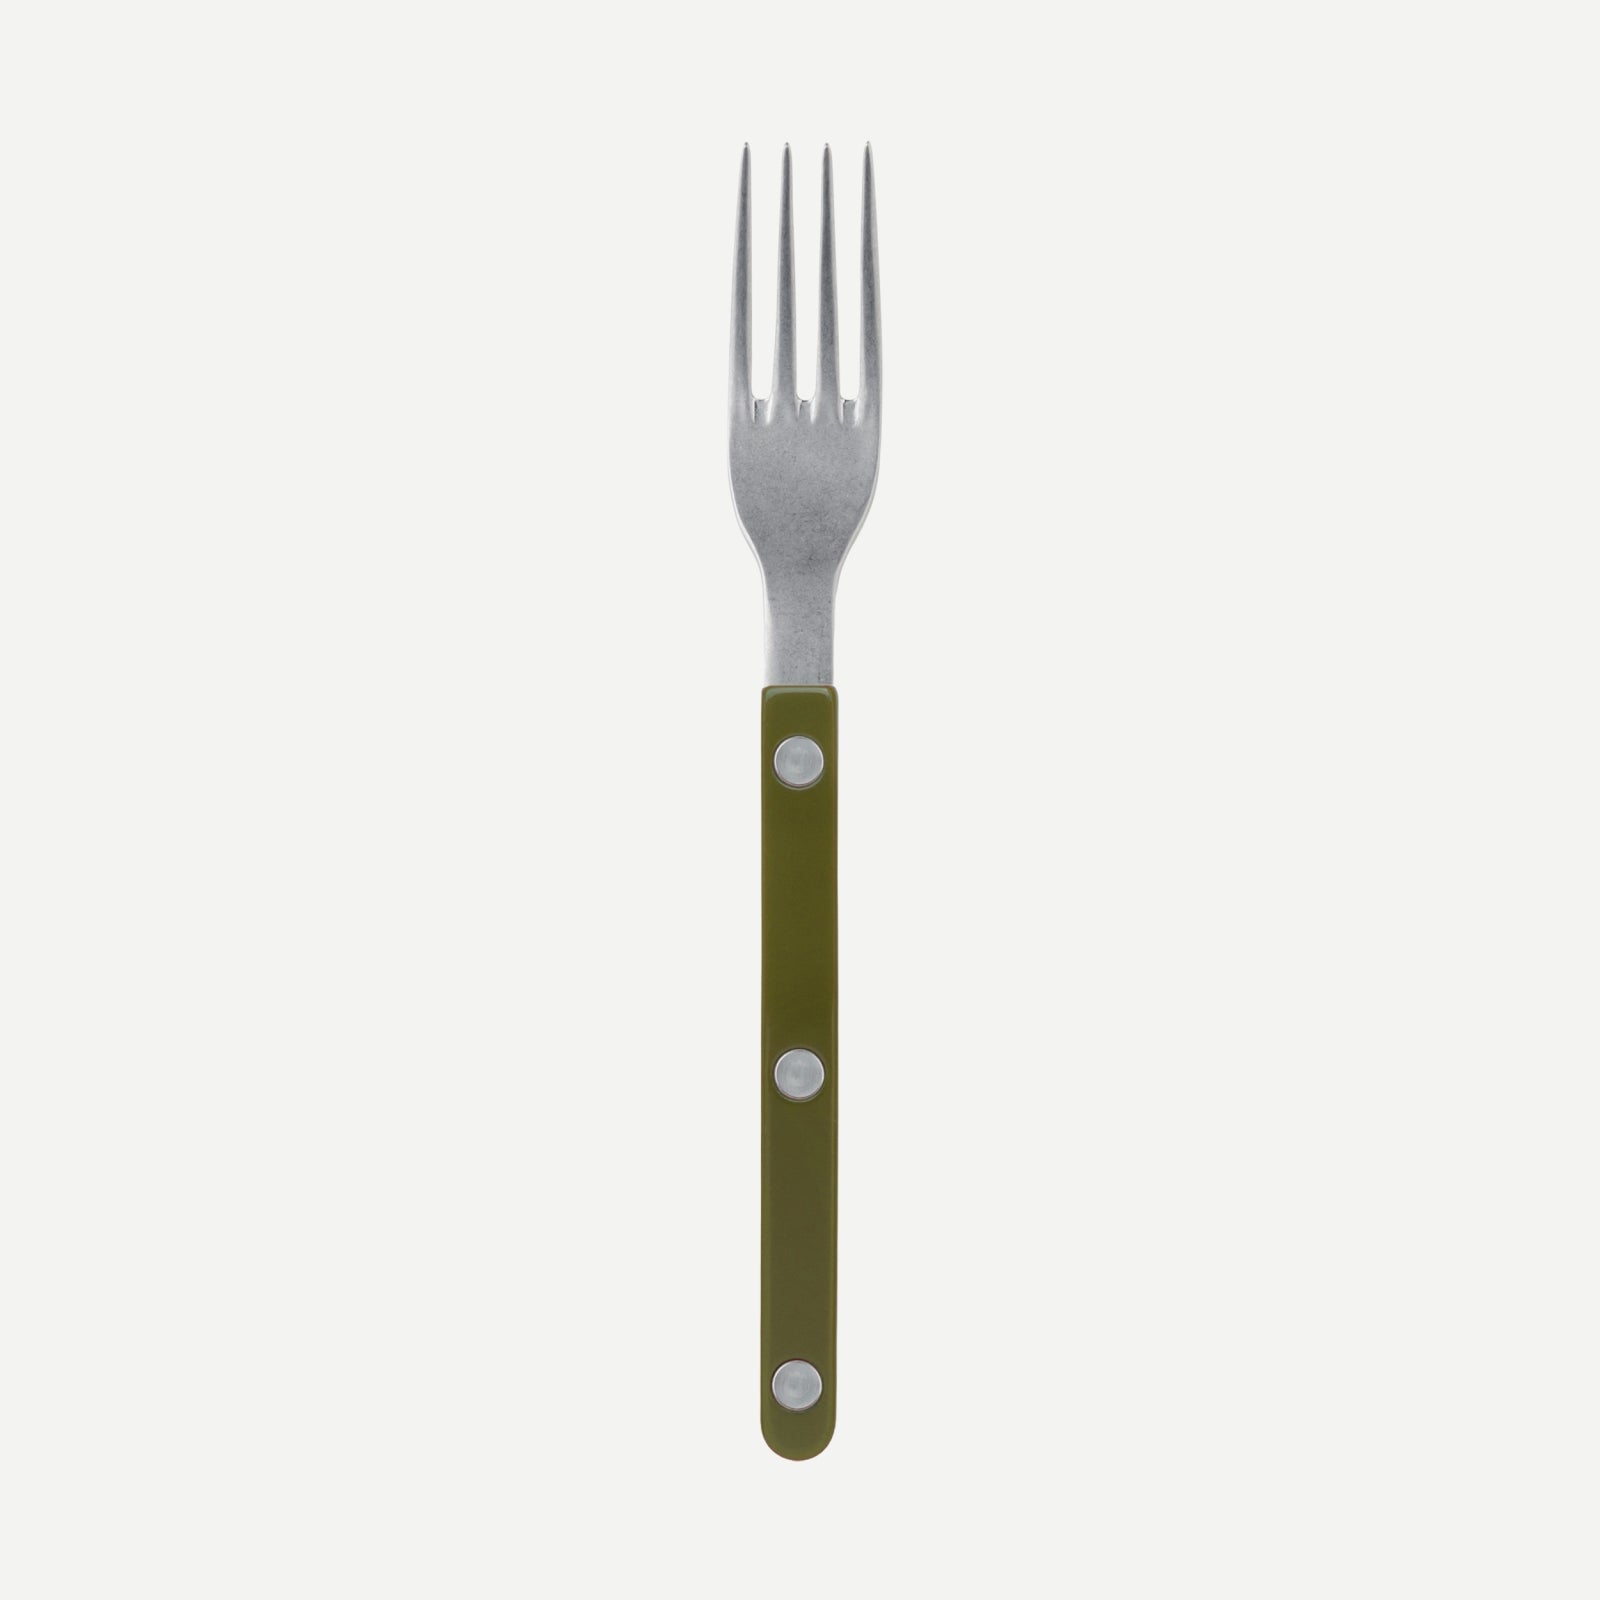 Petite fourchette - Bistrot vintage uni - Vert fougere